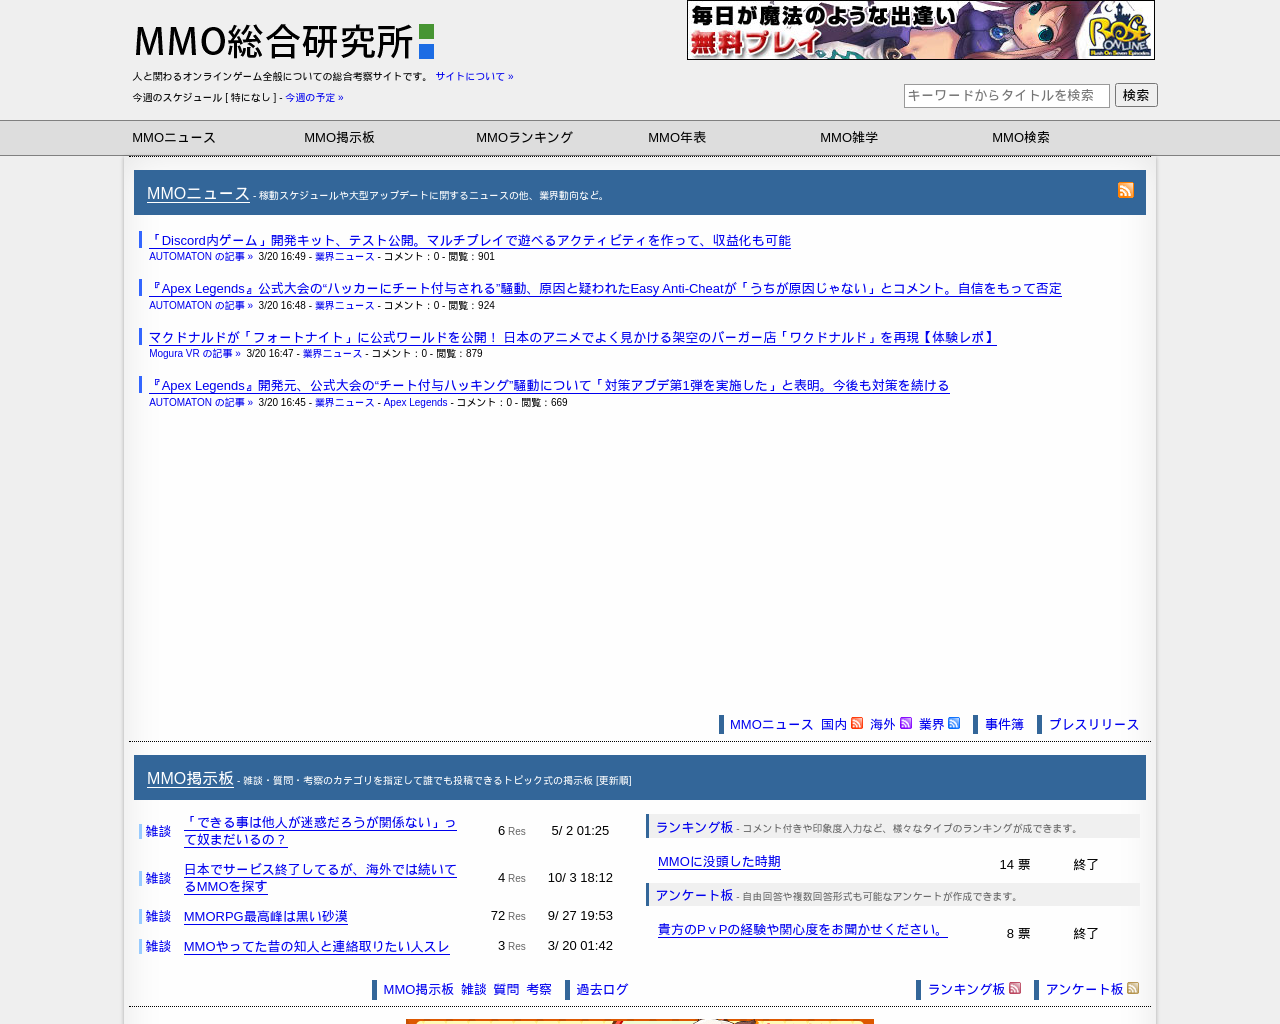 mmoinfo.net